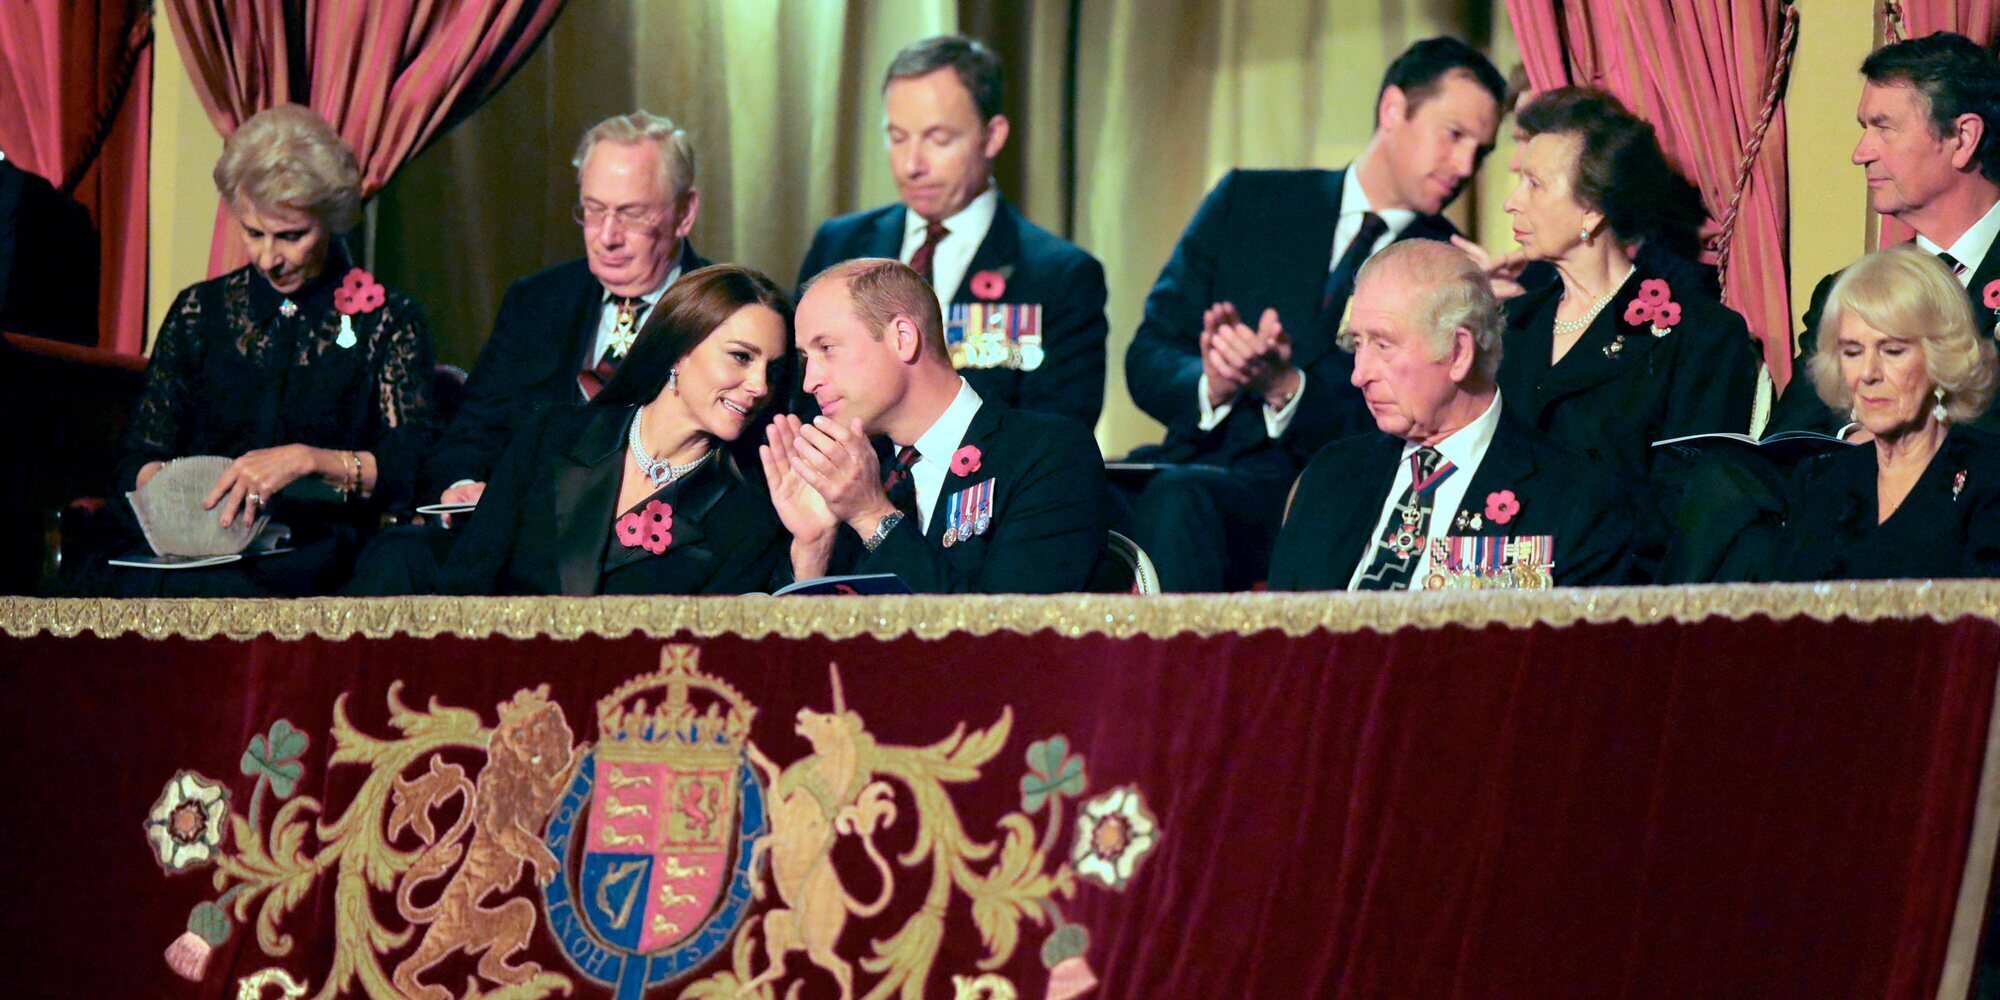 La Familia Real Británica vuelve a reunirse en un acto público por primera vez desde la muerte de la Reina Isabel II